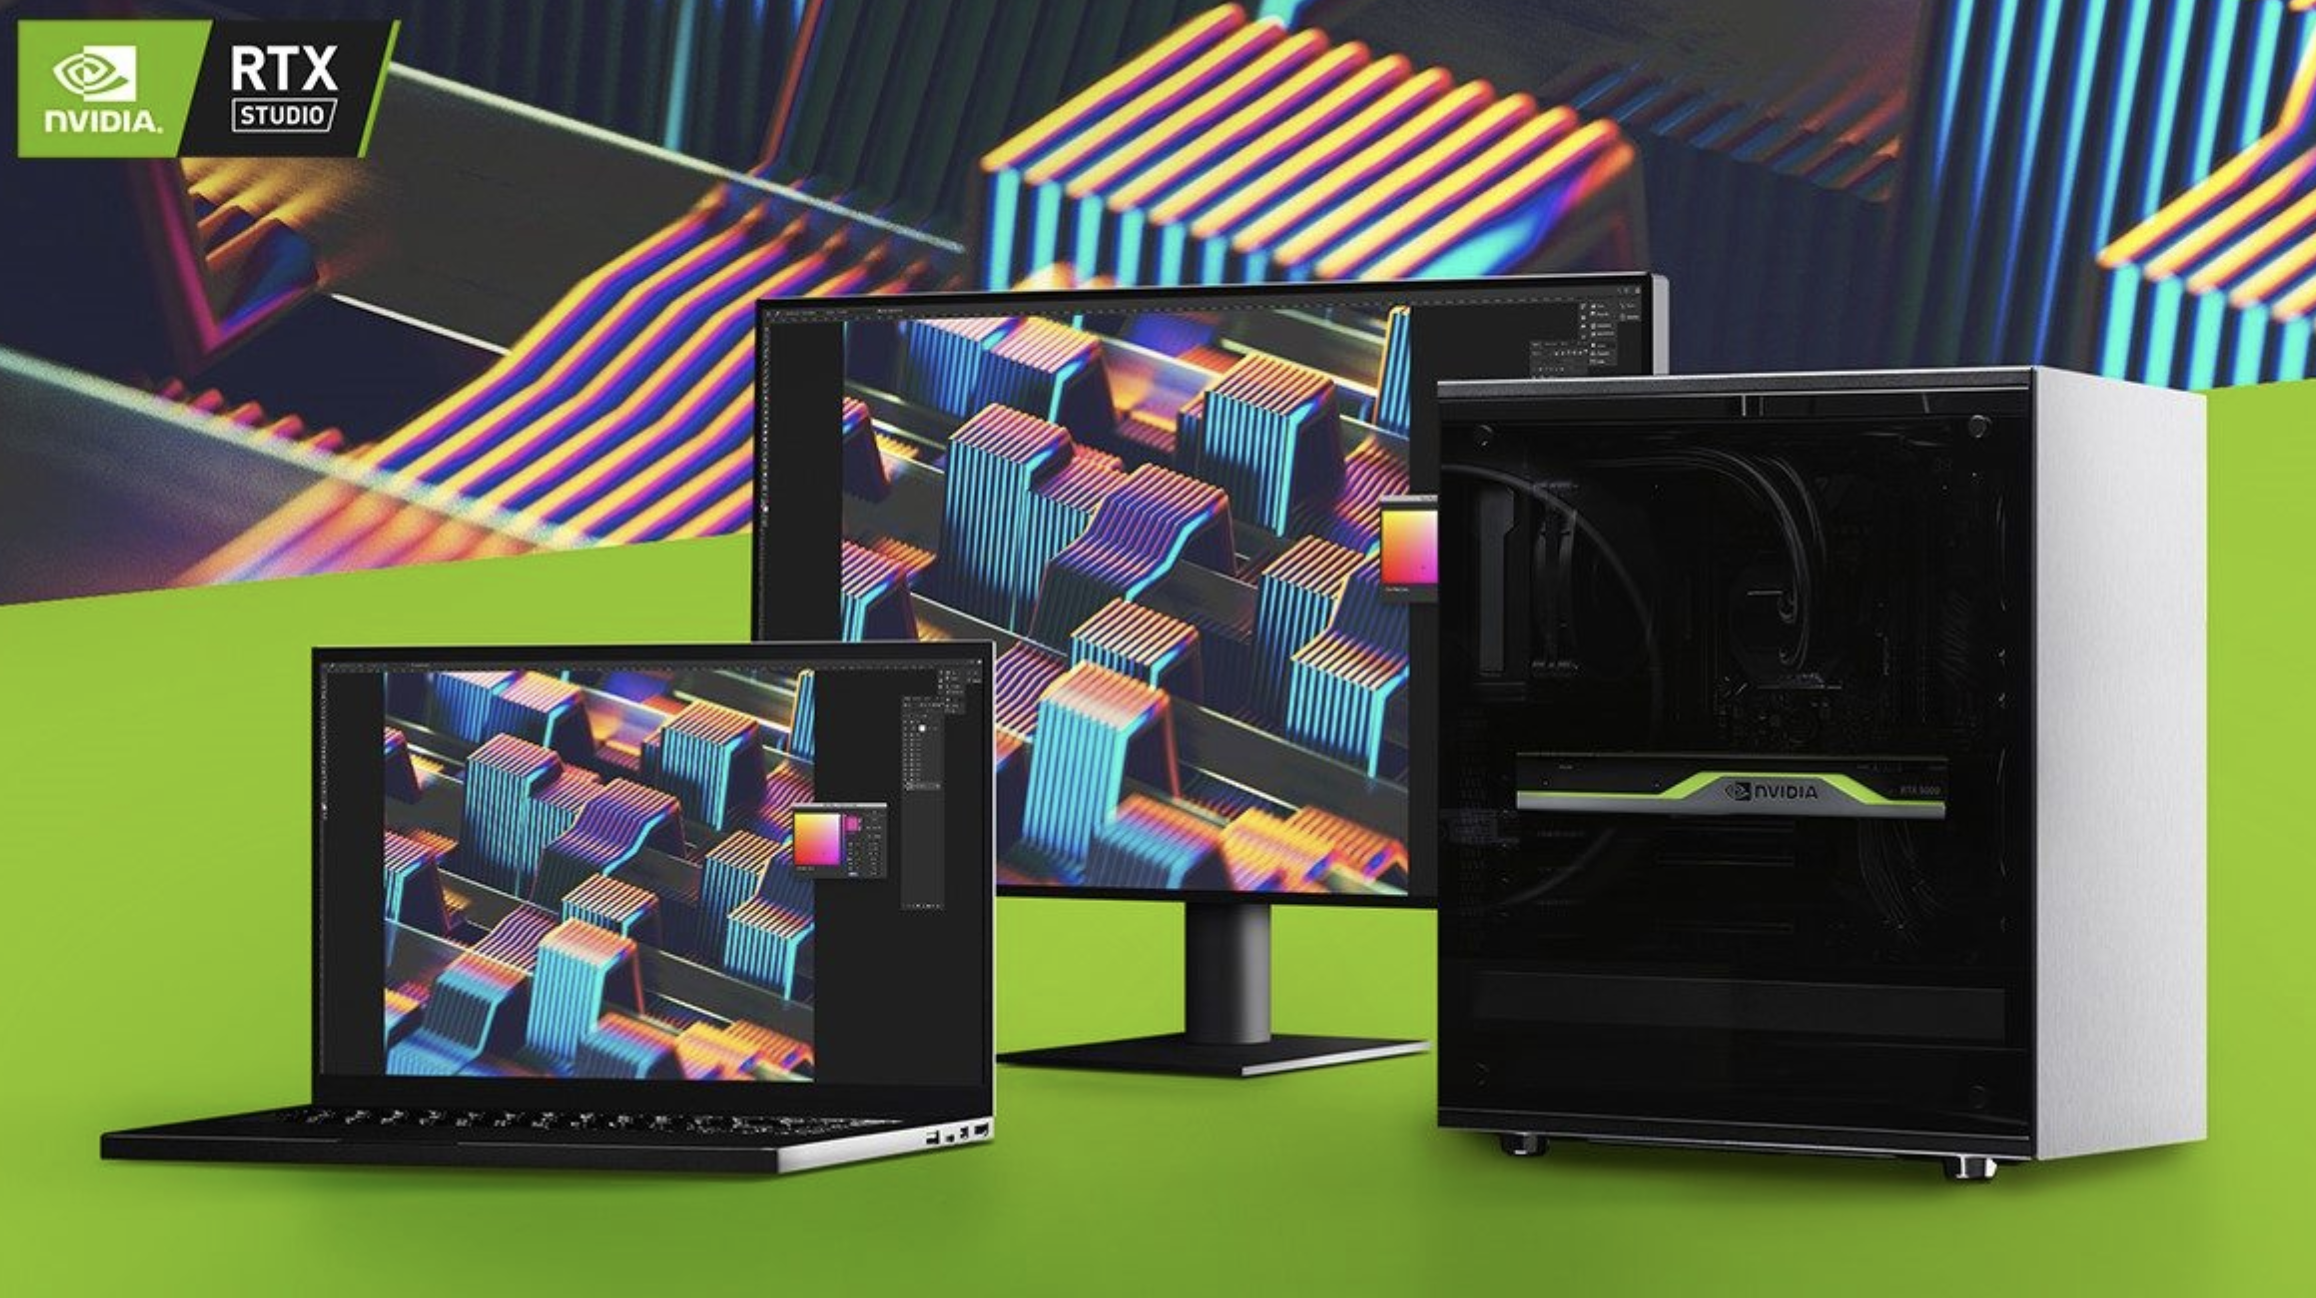 NVIDIA: nowe urządzenia RTX Studio z promocyjnym dostępem do Adobe Creative Cloud